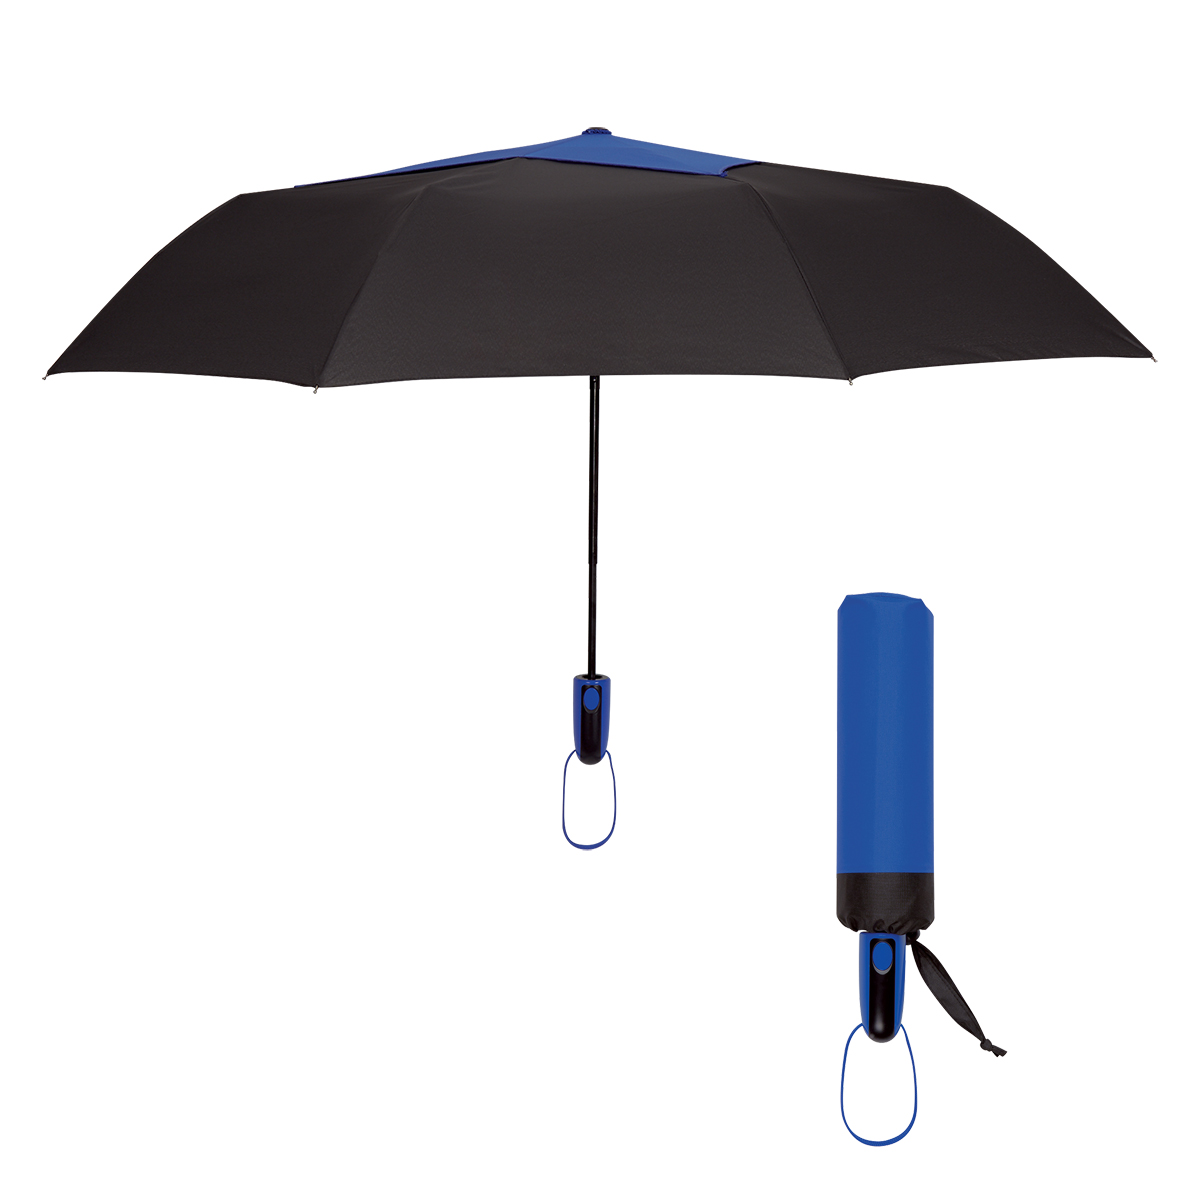 4150 - Paraguas de Apertura Automática de Tela Pongee de 44" con Ventilación